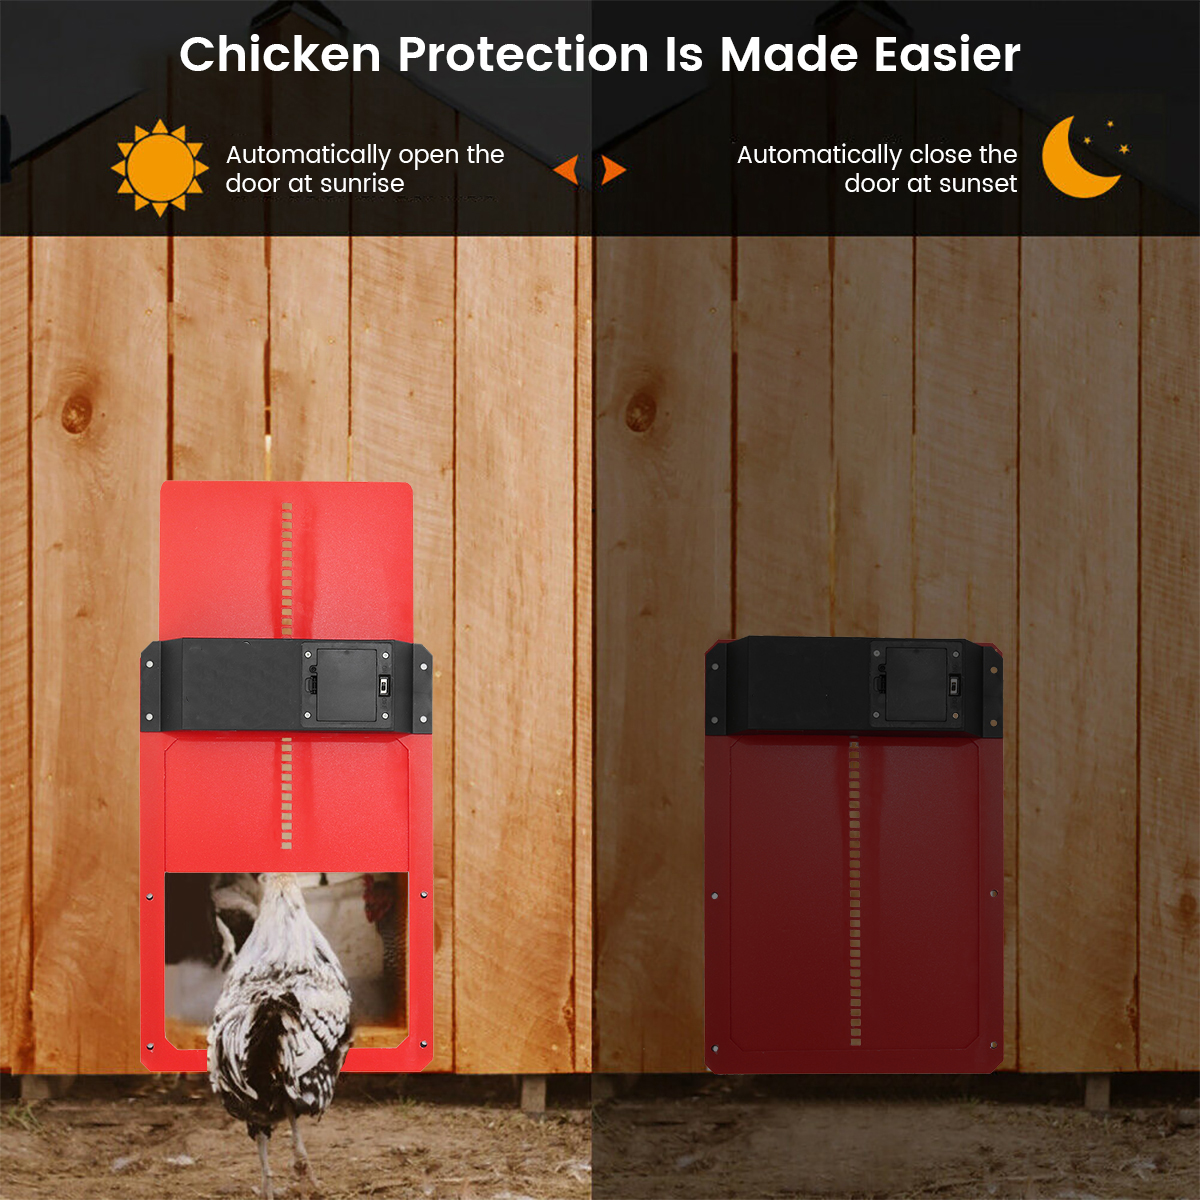 Automatic-Chicken-Coop-Door-Opener-Light-Sensor-Automatic-Chicken-House-Door-Sensitive-Home-Pets-Dog-1948305-4